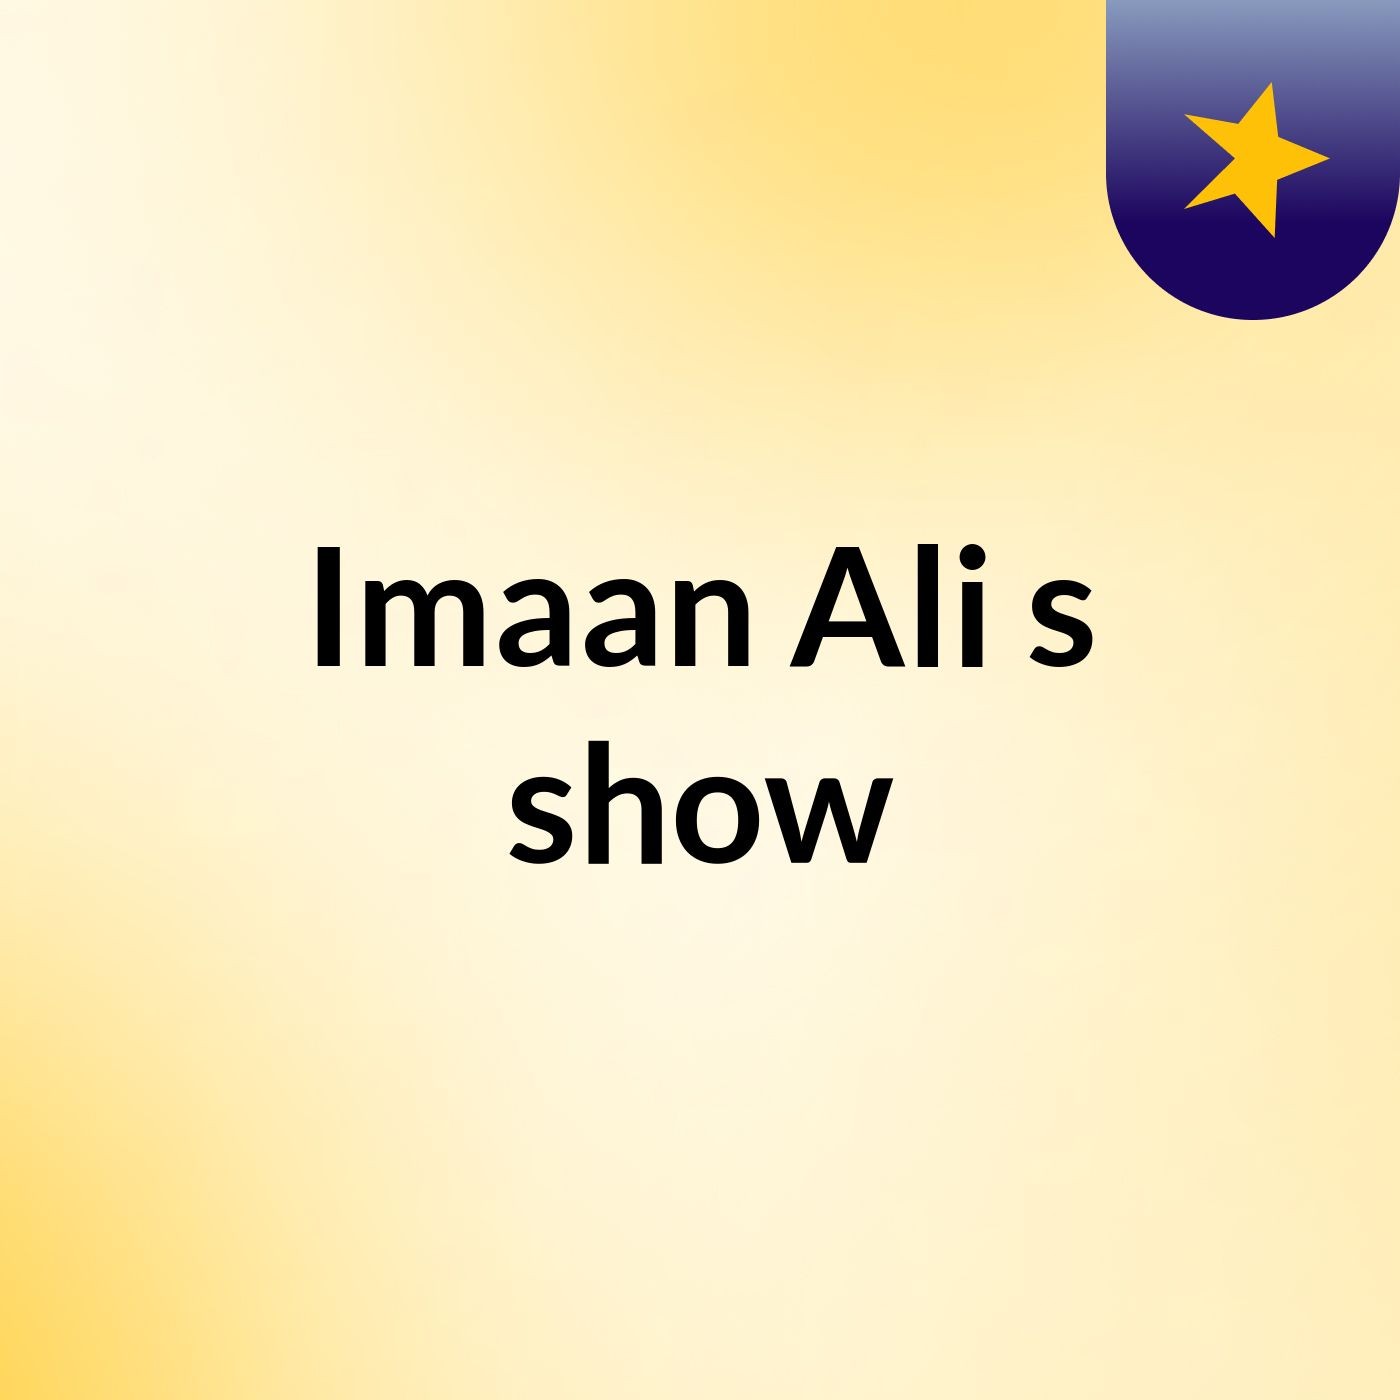 Episode 5 - Imaan Ali's show